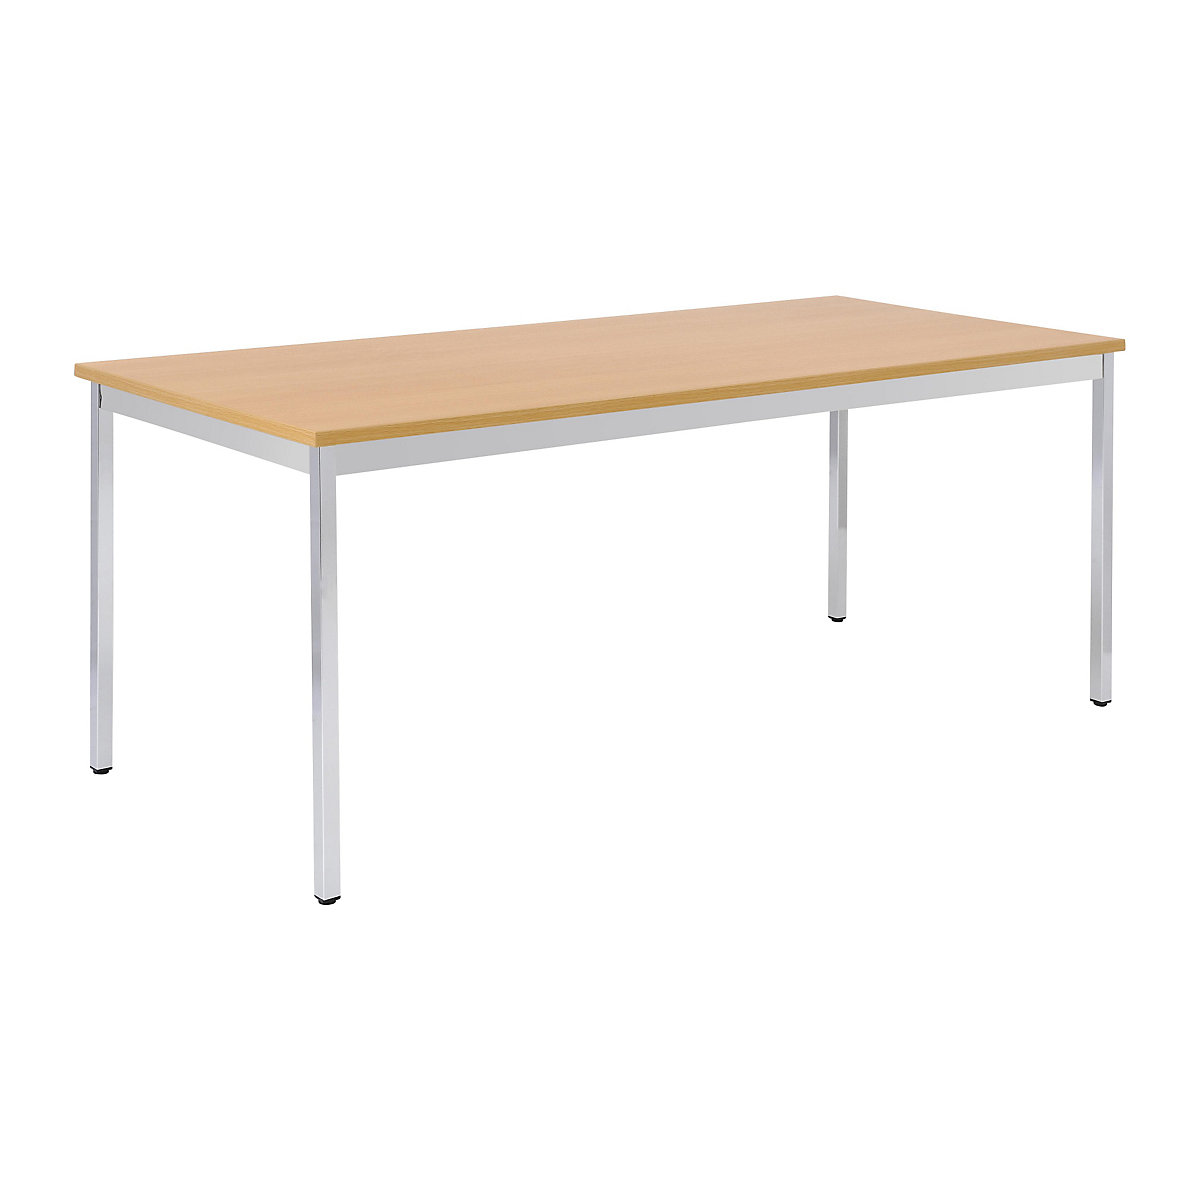 Víceúčelový stůl – eurokraft basic, obdélníkový tvar, š x v 1200 x 740 mm, hloubka 800 mm, deska v bukovém dekoru, podstavec pochromovaný-14